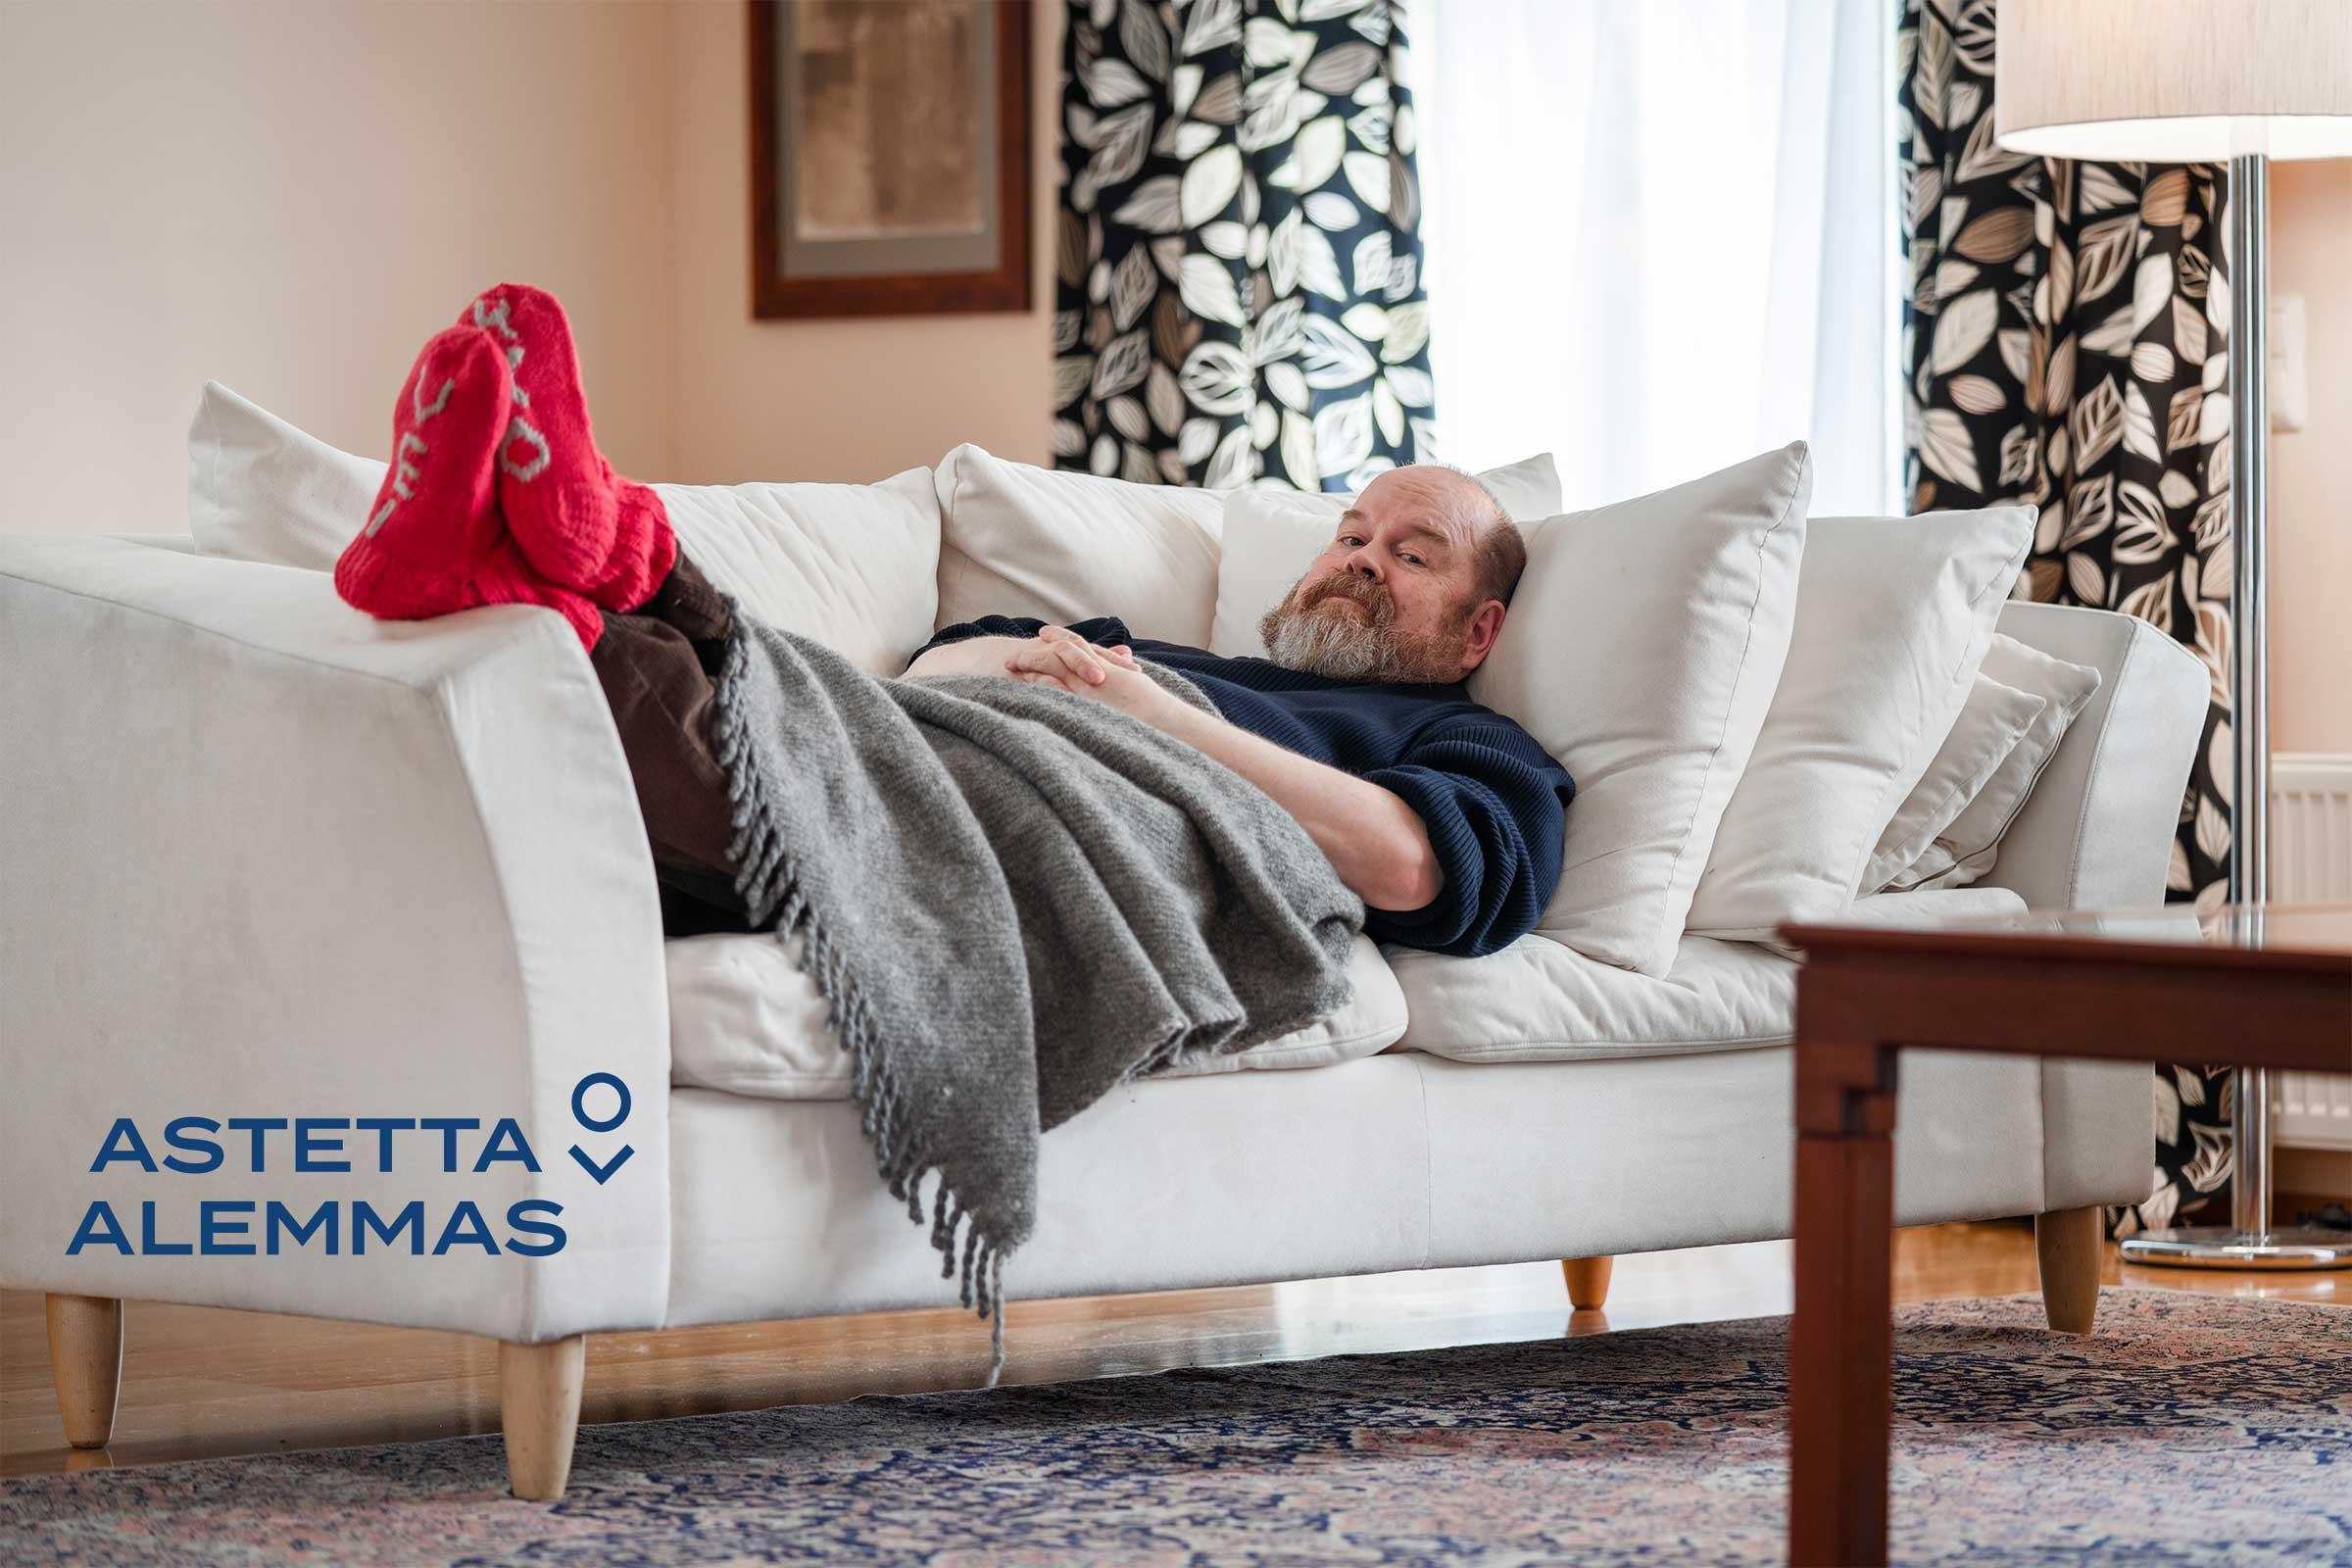 Astetta alemmas -kampanjan valokuva, jossa mies makaa sohvalla villasukat jalassa, Astetta alemmas -logo.